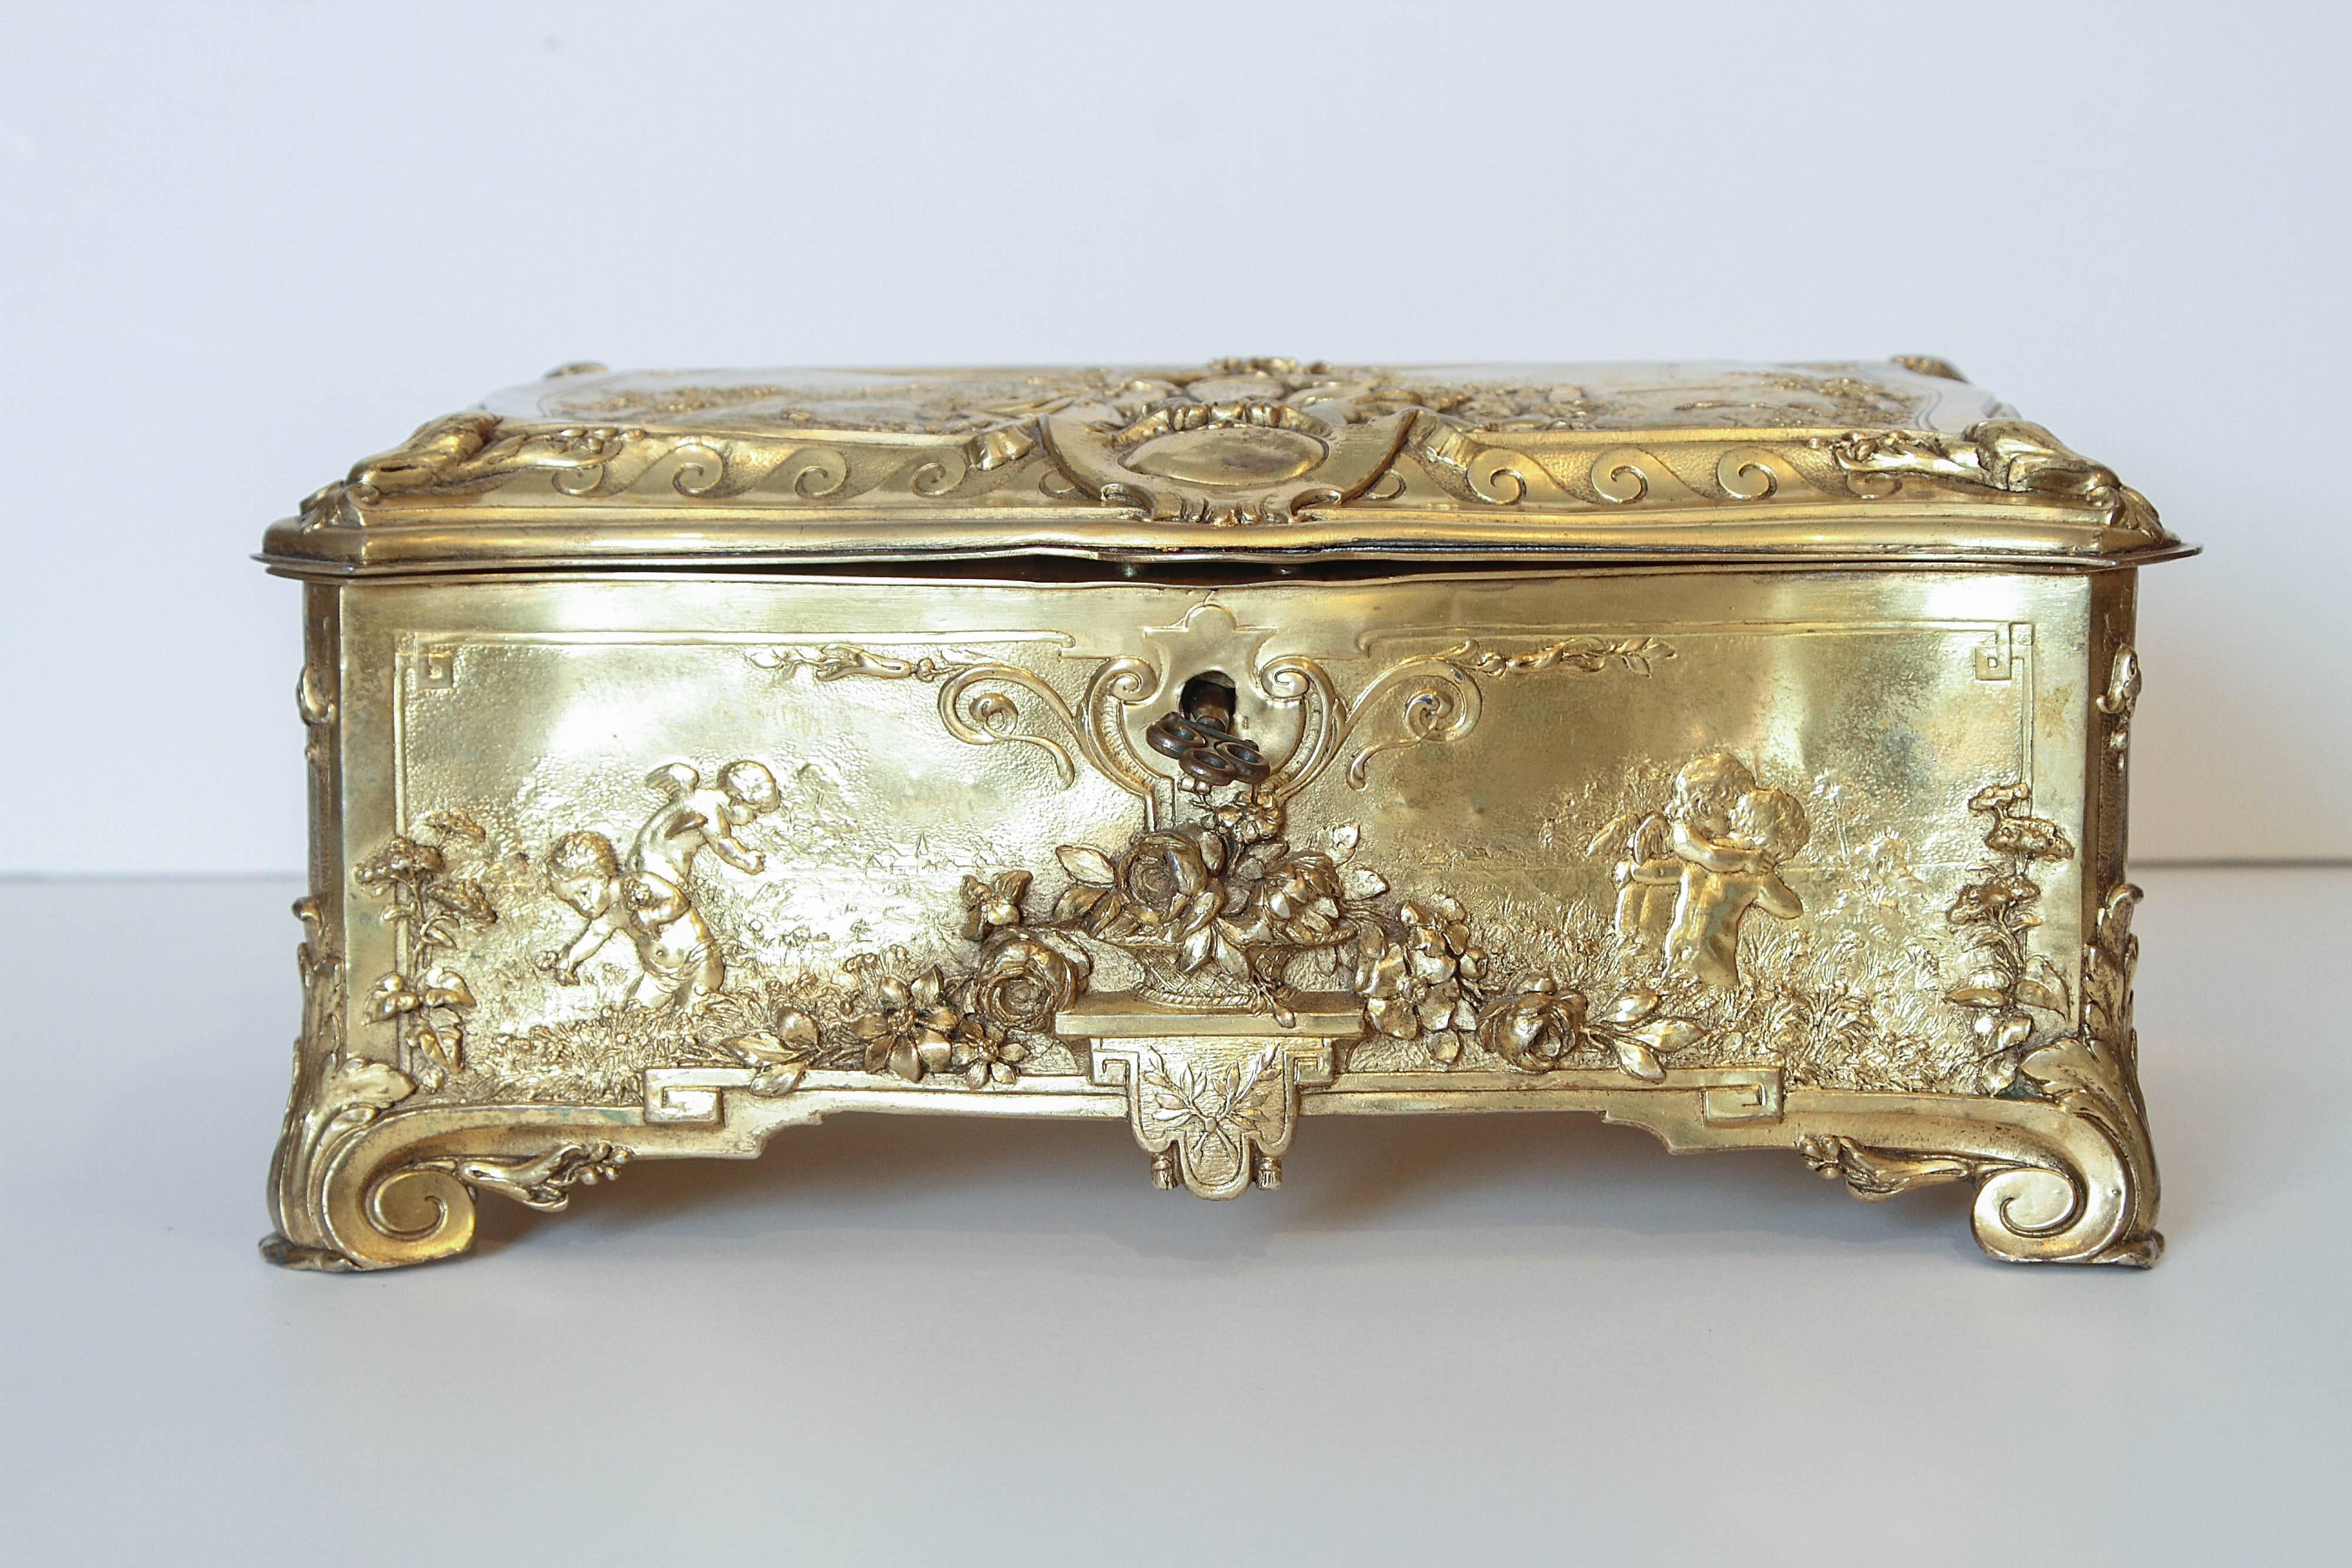 Feinste Qualität Französisch 19. Jahrhundert Bronze doré Box. Schöne Szenen mit spielenden Putten auf allen Seiten. Boucher-Szenen. Gefüttert mit einem schönen Seiden-Originalschlüssel.